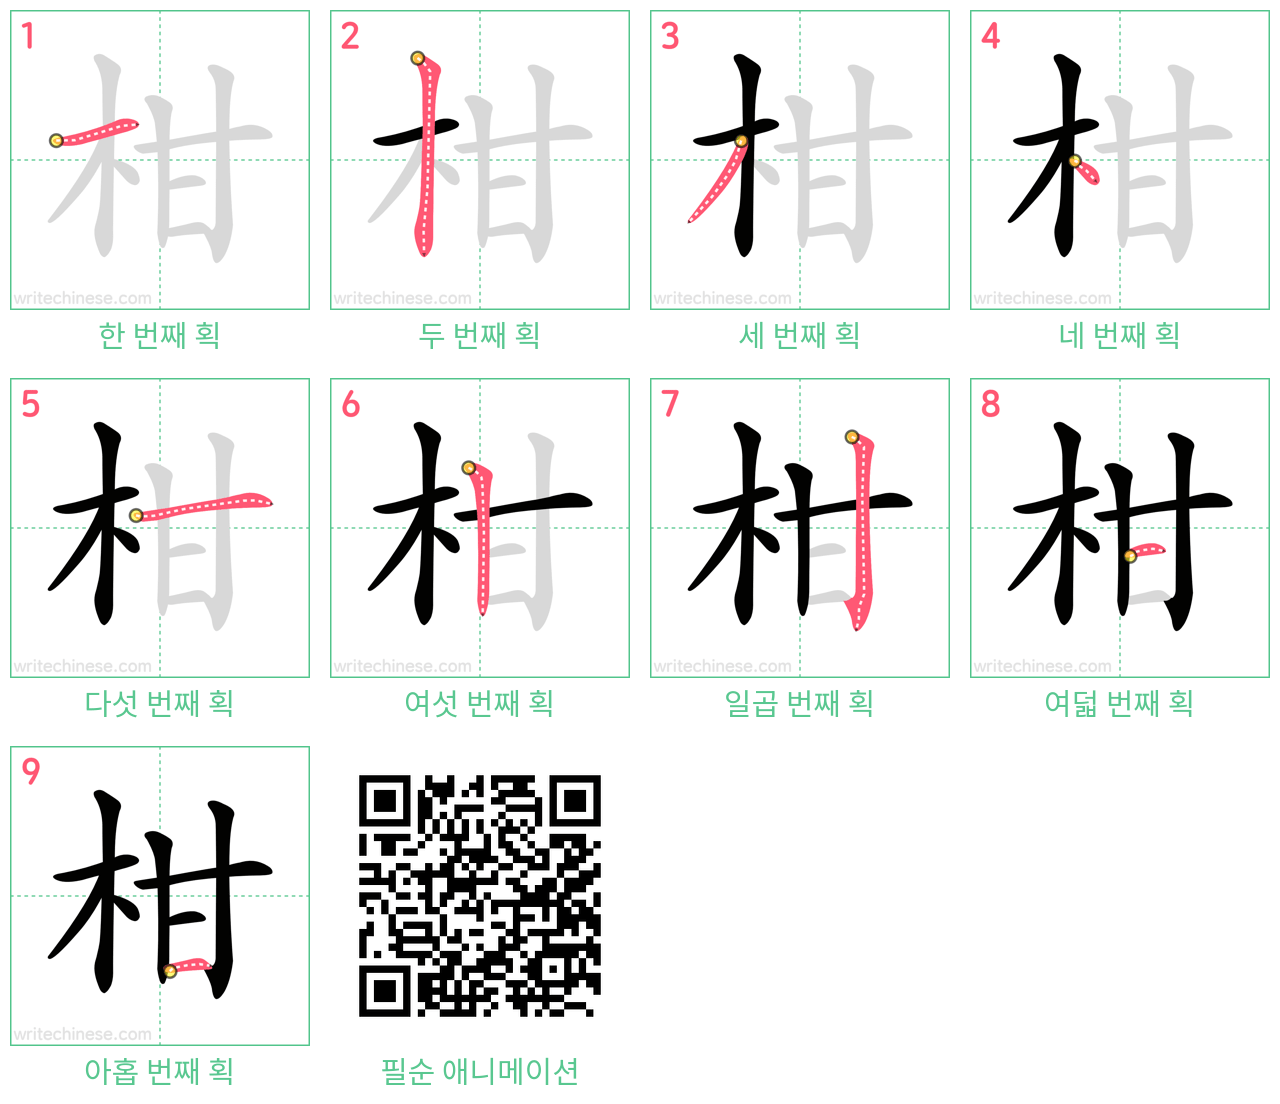 柑 step-by-step stroke order diagrams